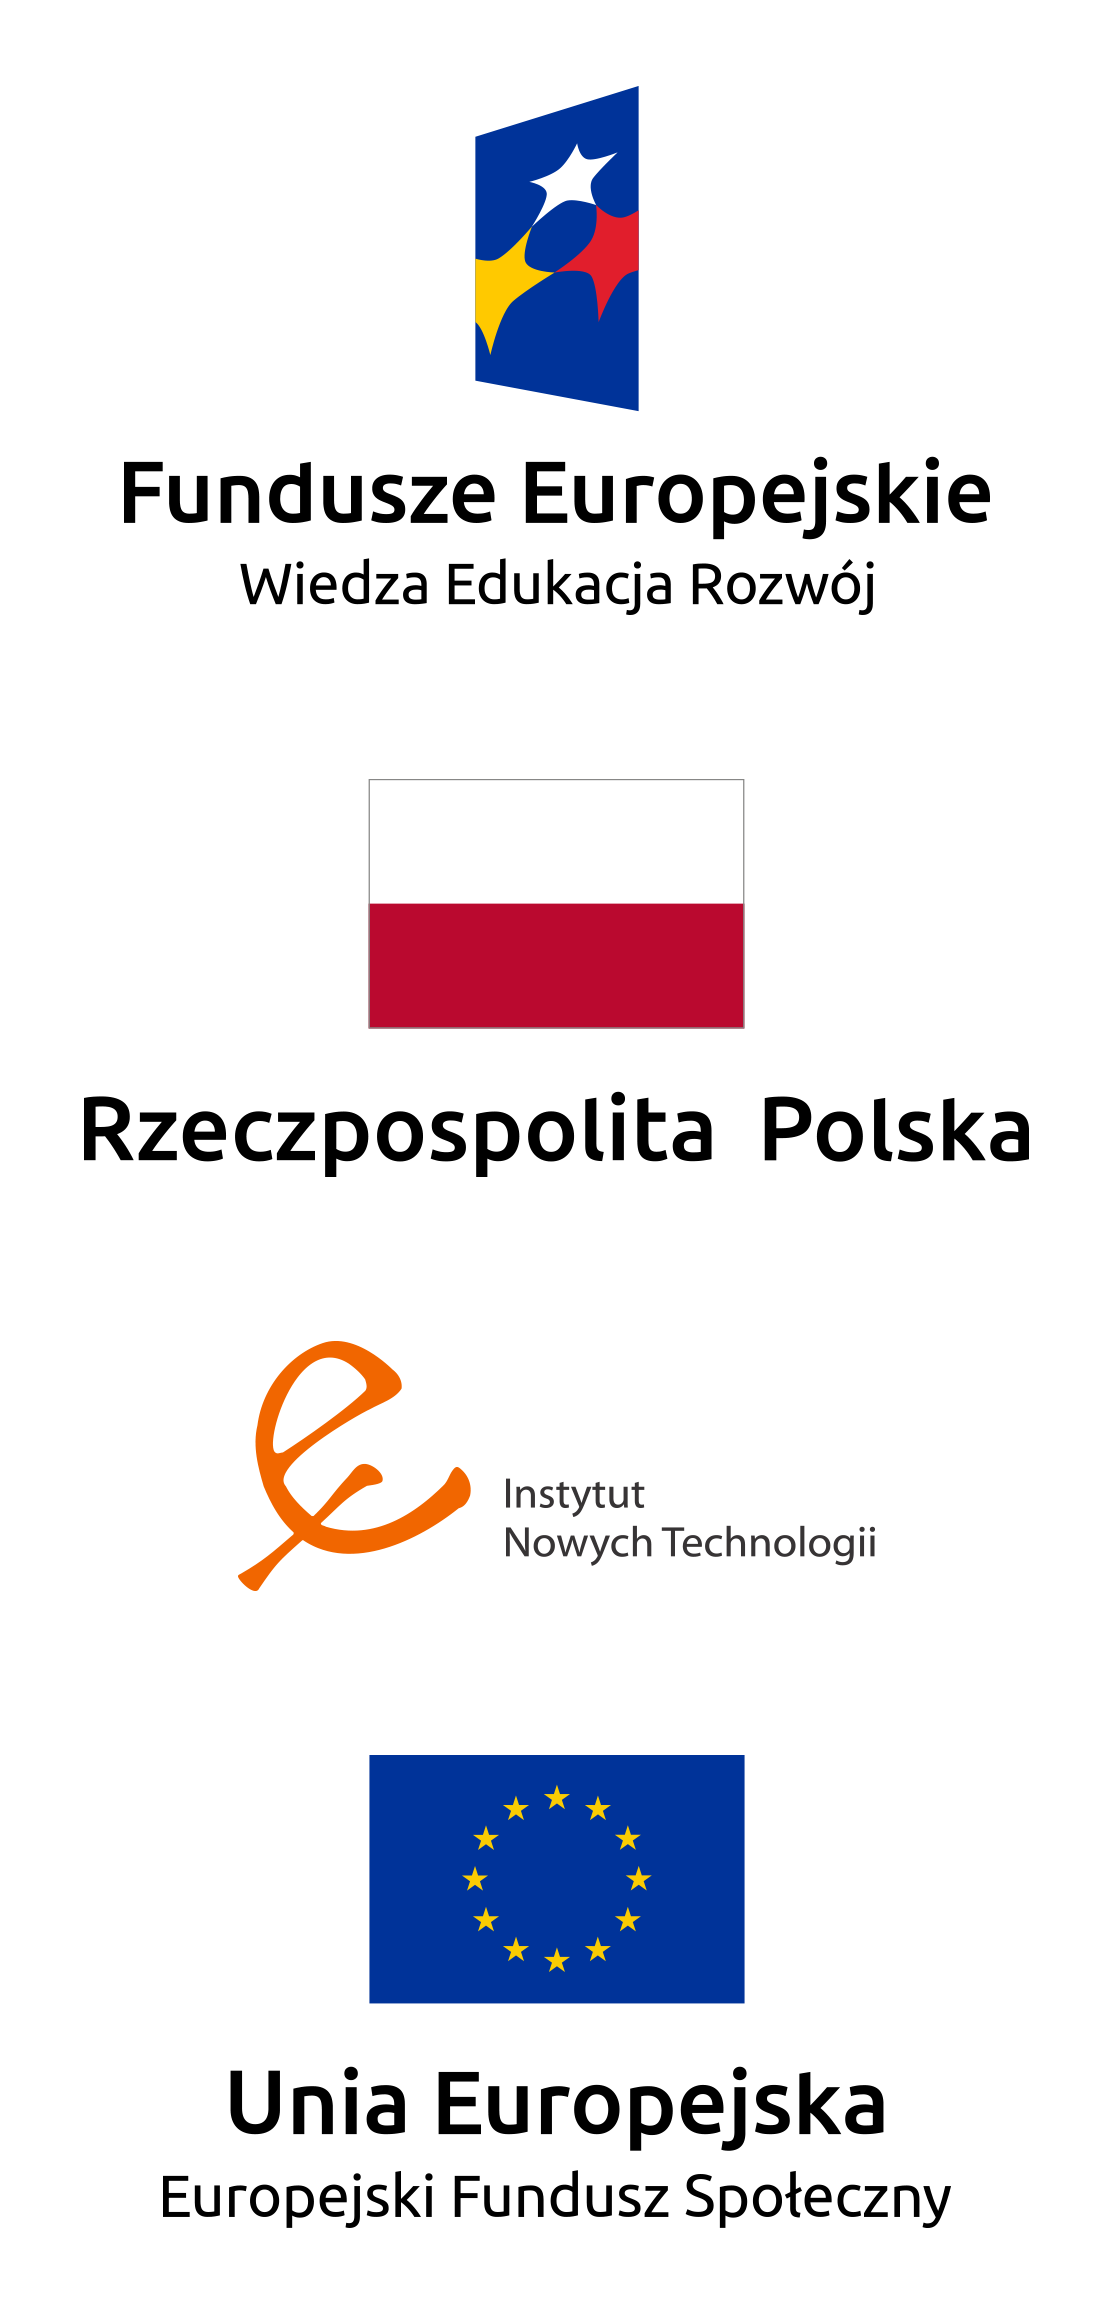 Fundusze Europejskie Wiedza Edukacja Rozwój; Rzeczpospolita Polska; Instytut Nowych Technologii; Unia Europejska - Europejski Fundusz Społeczny